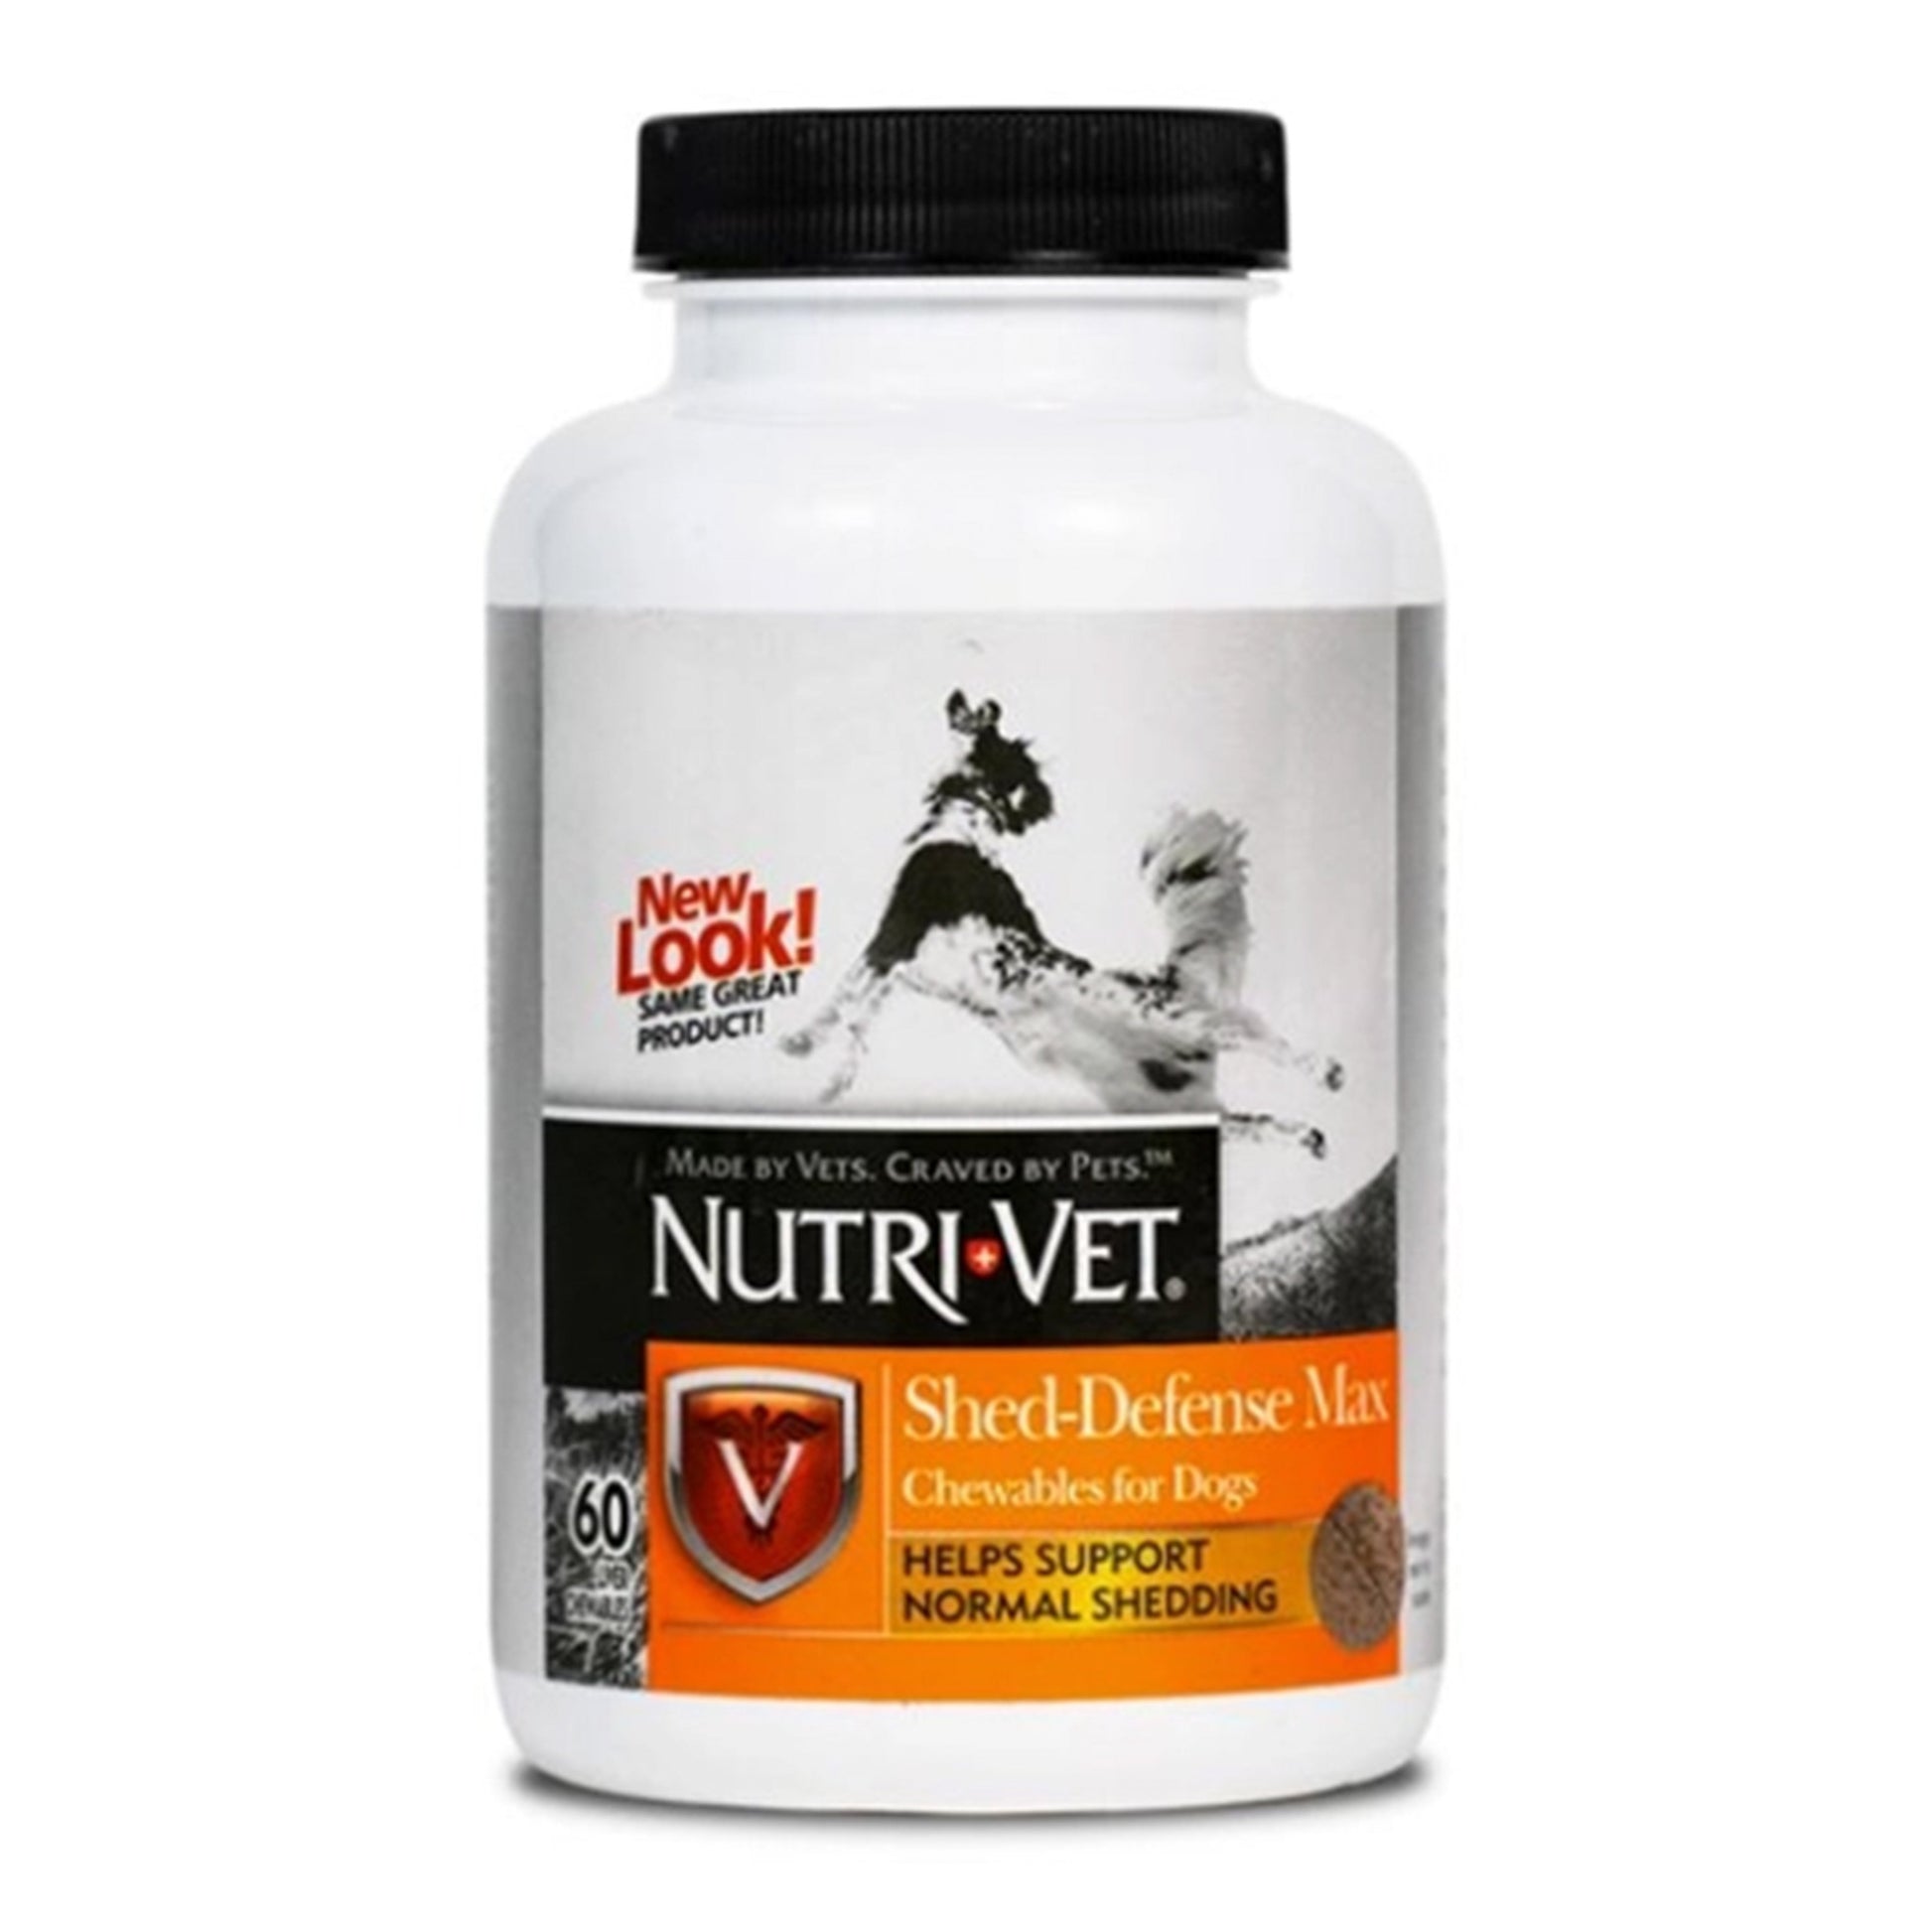 Nutri-Vet Shed Defense Max Liver Chewables 60ct, Nutri-Vet